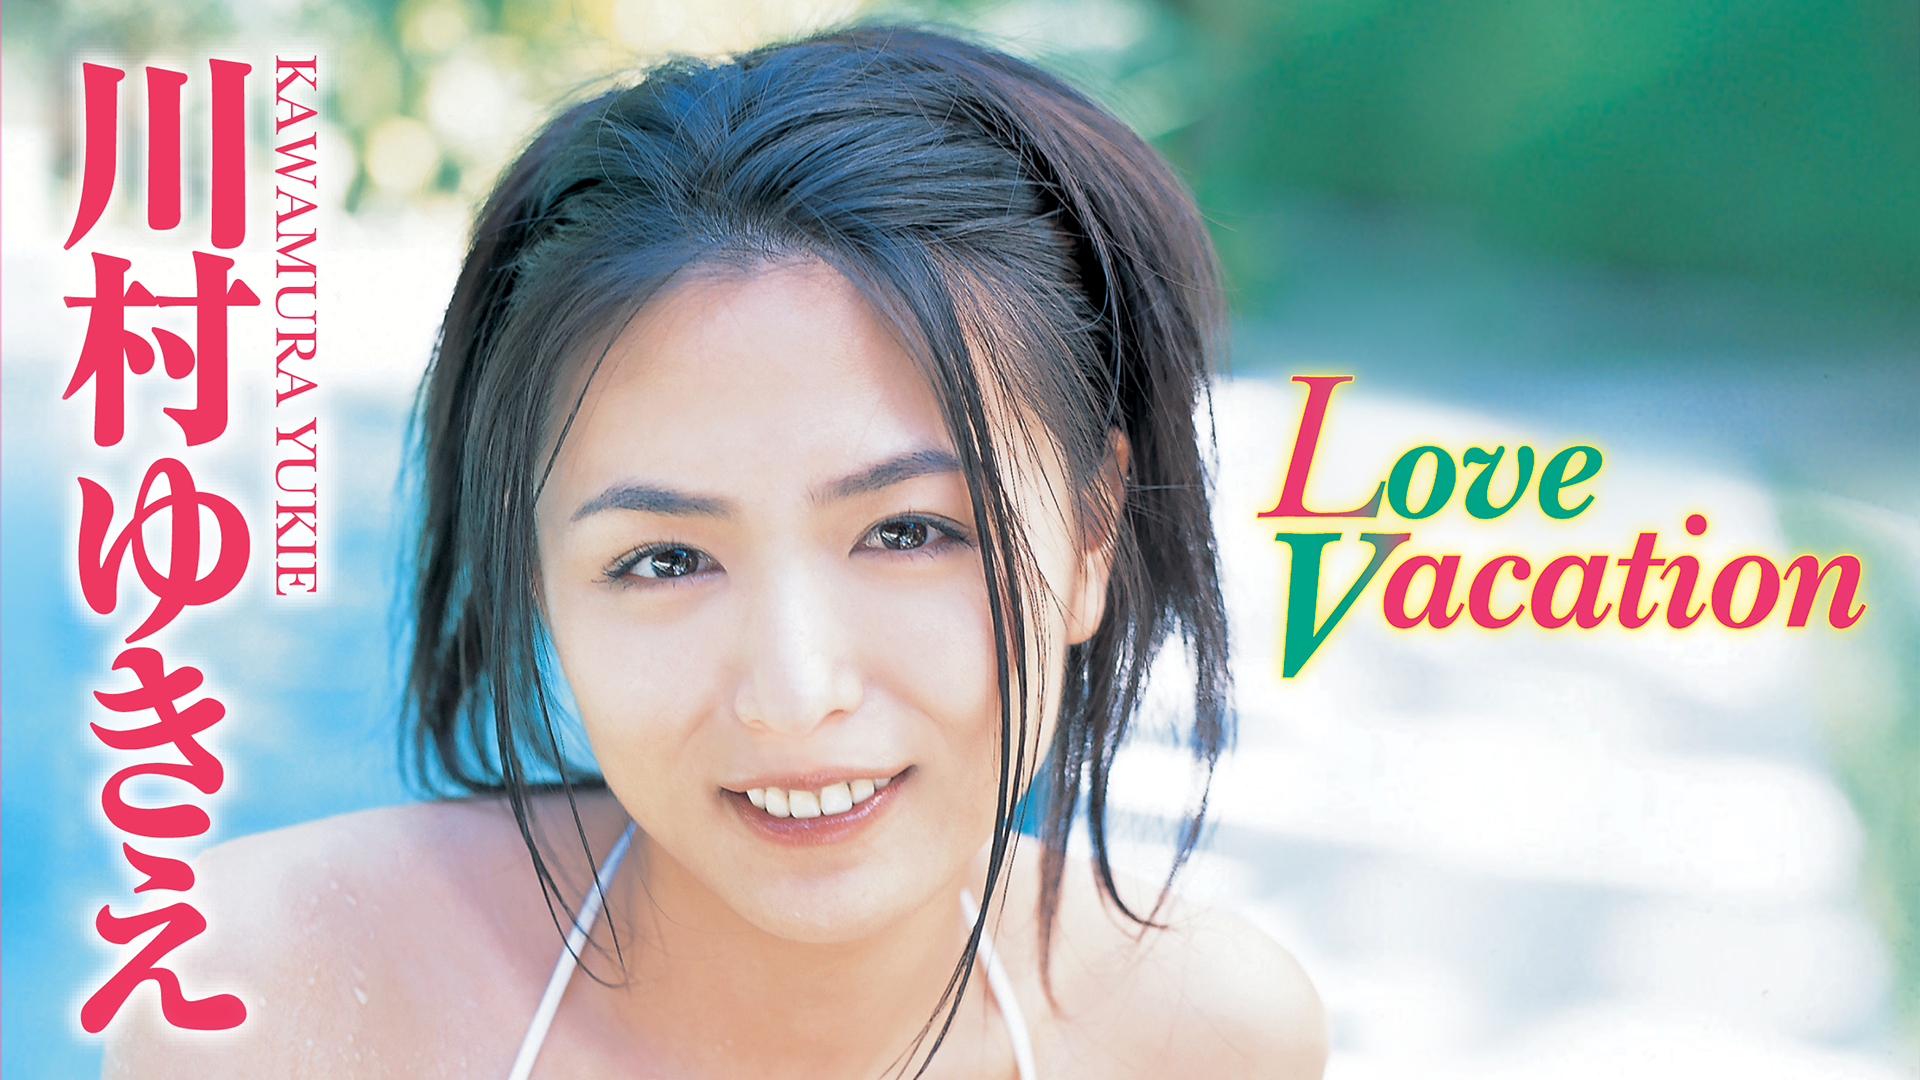 川村ゆきえ『Love Vacation』(その他 / 2006) - 動画配信 | U-NEXT 